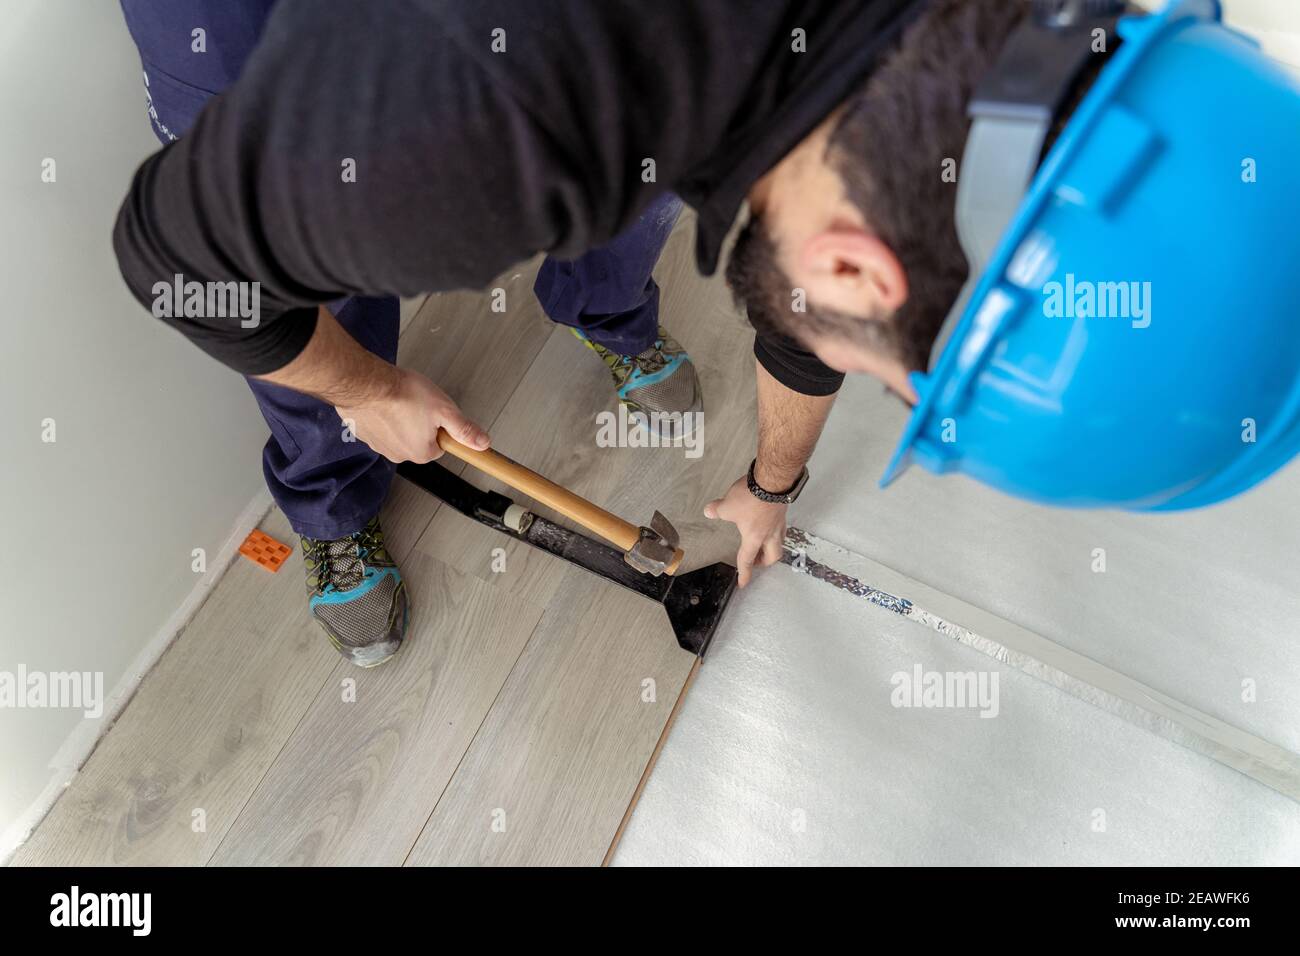 Uomo lavoratore che assembla pavimenti laminati. Foto Stock